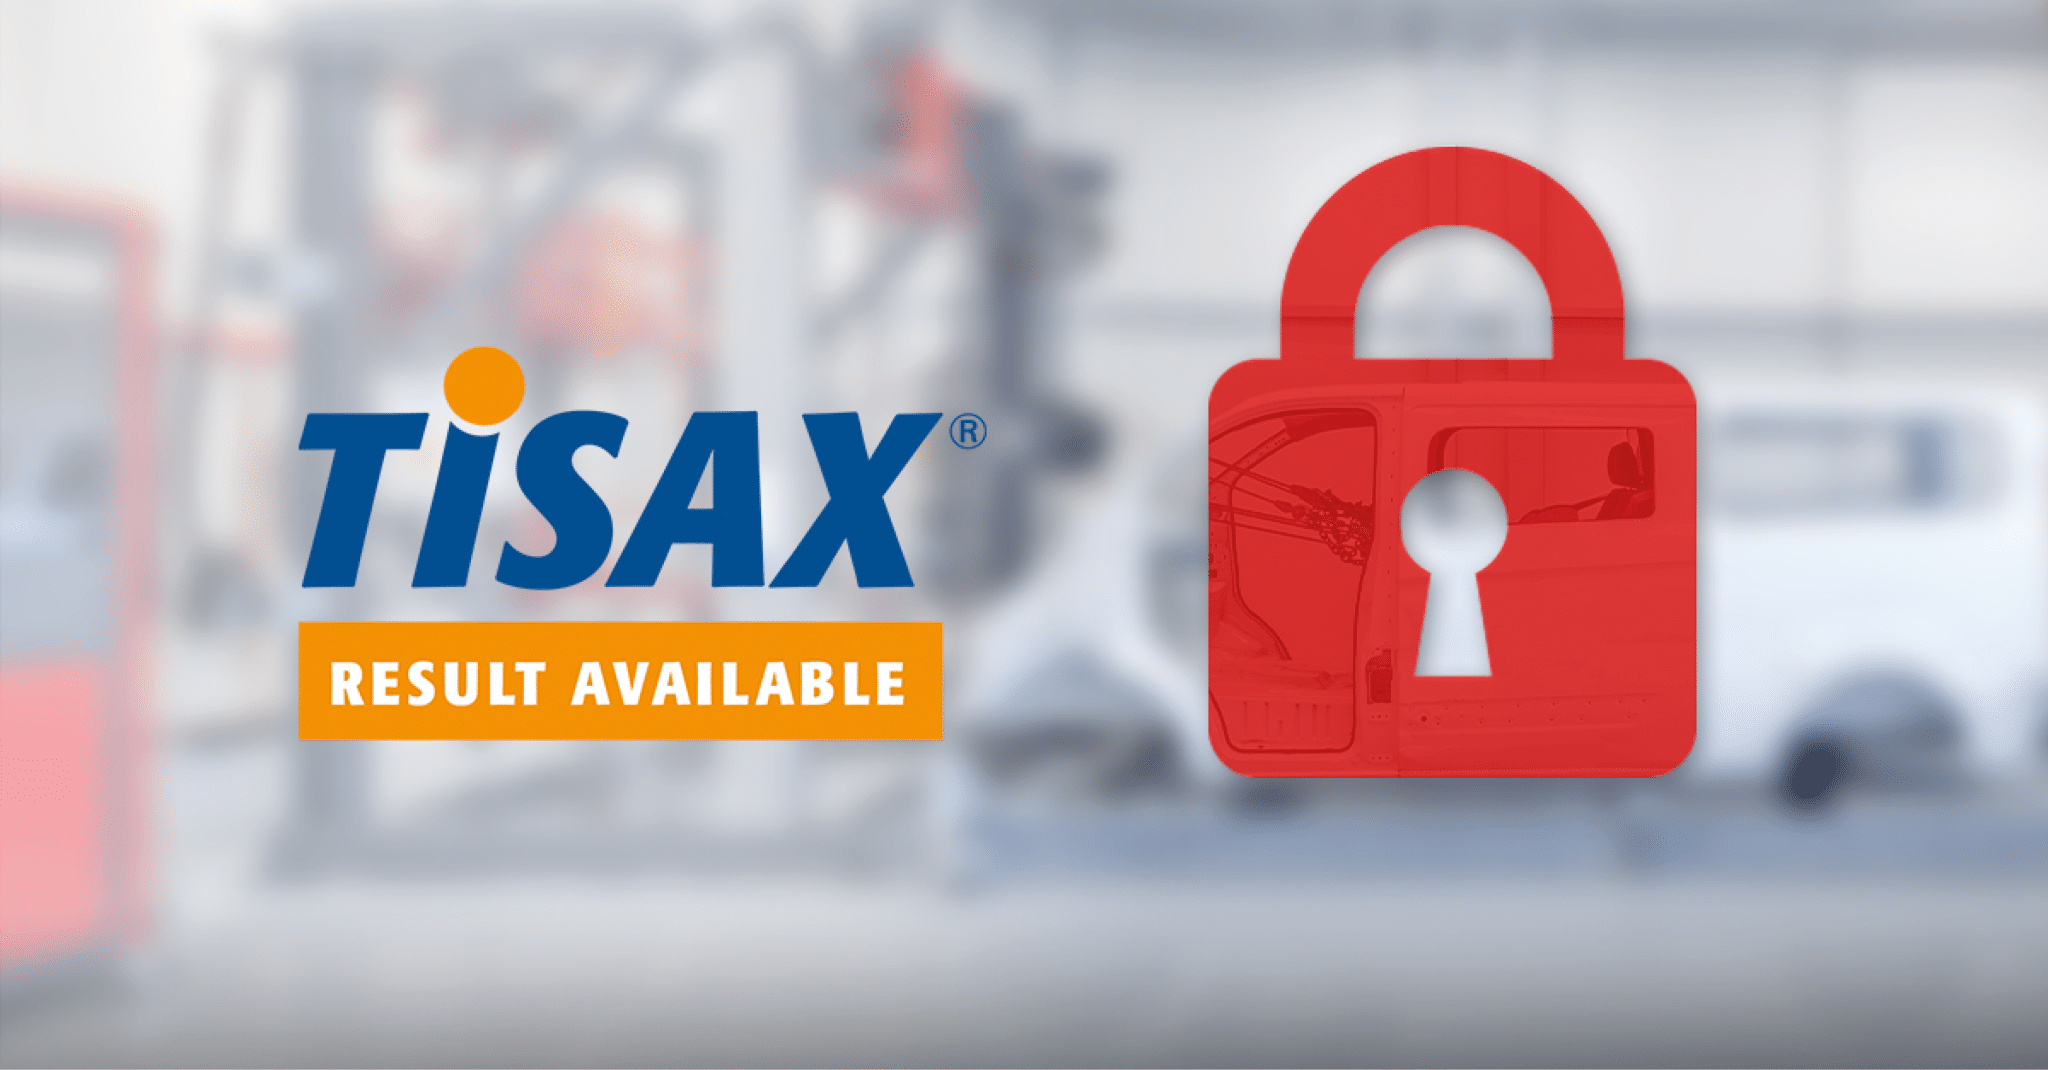 Snoeks získal certifikaci TISAX